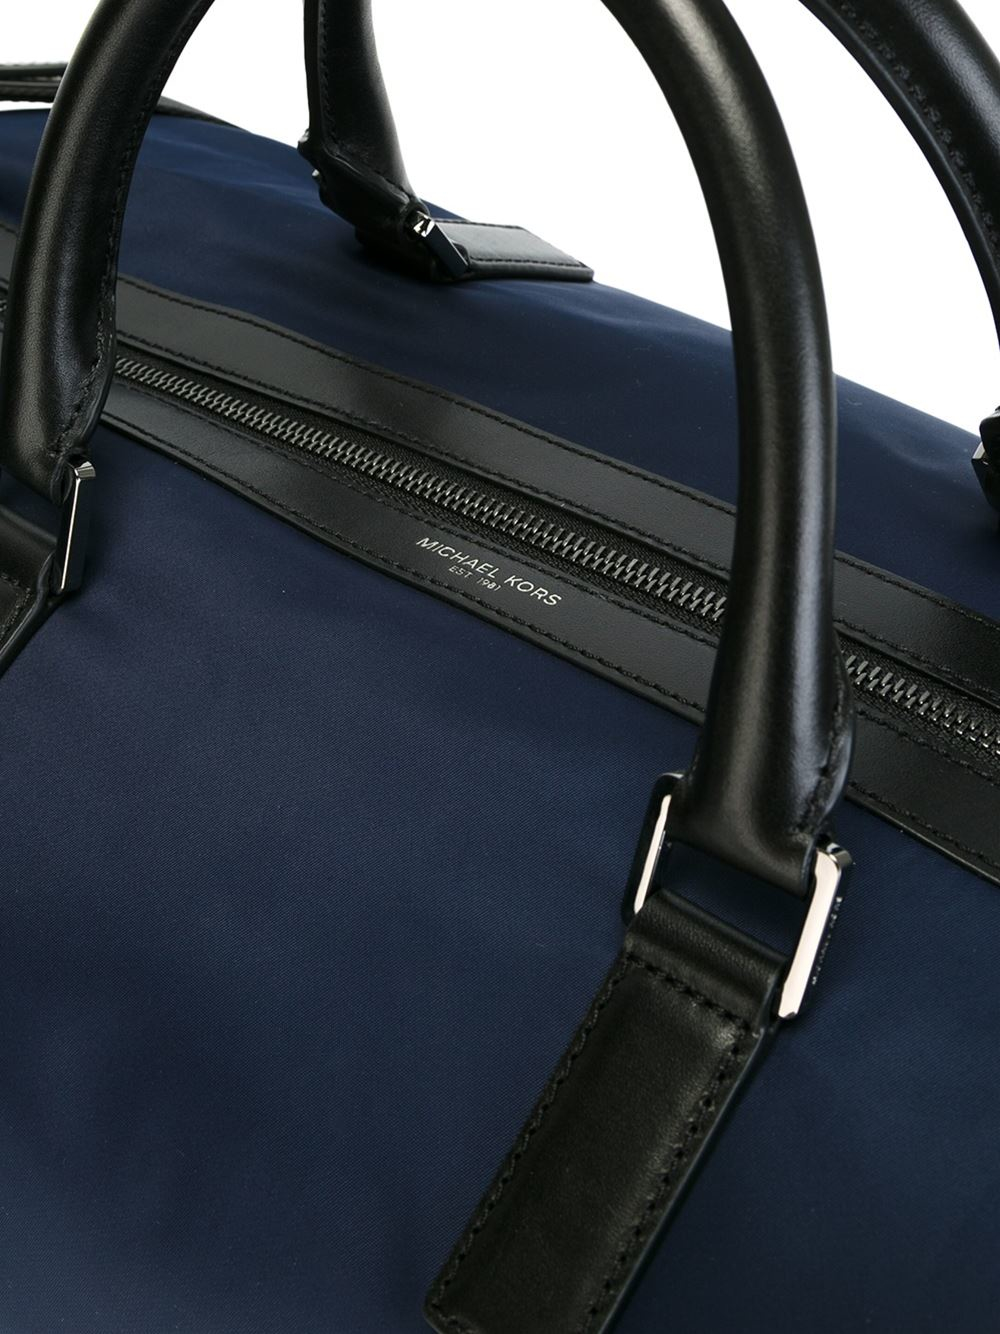 Michael Kors 'kent' Duffel Bag in Blue (Black) for Men - Lyst